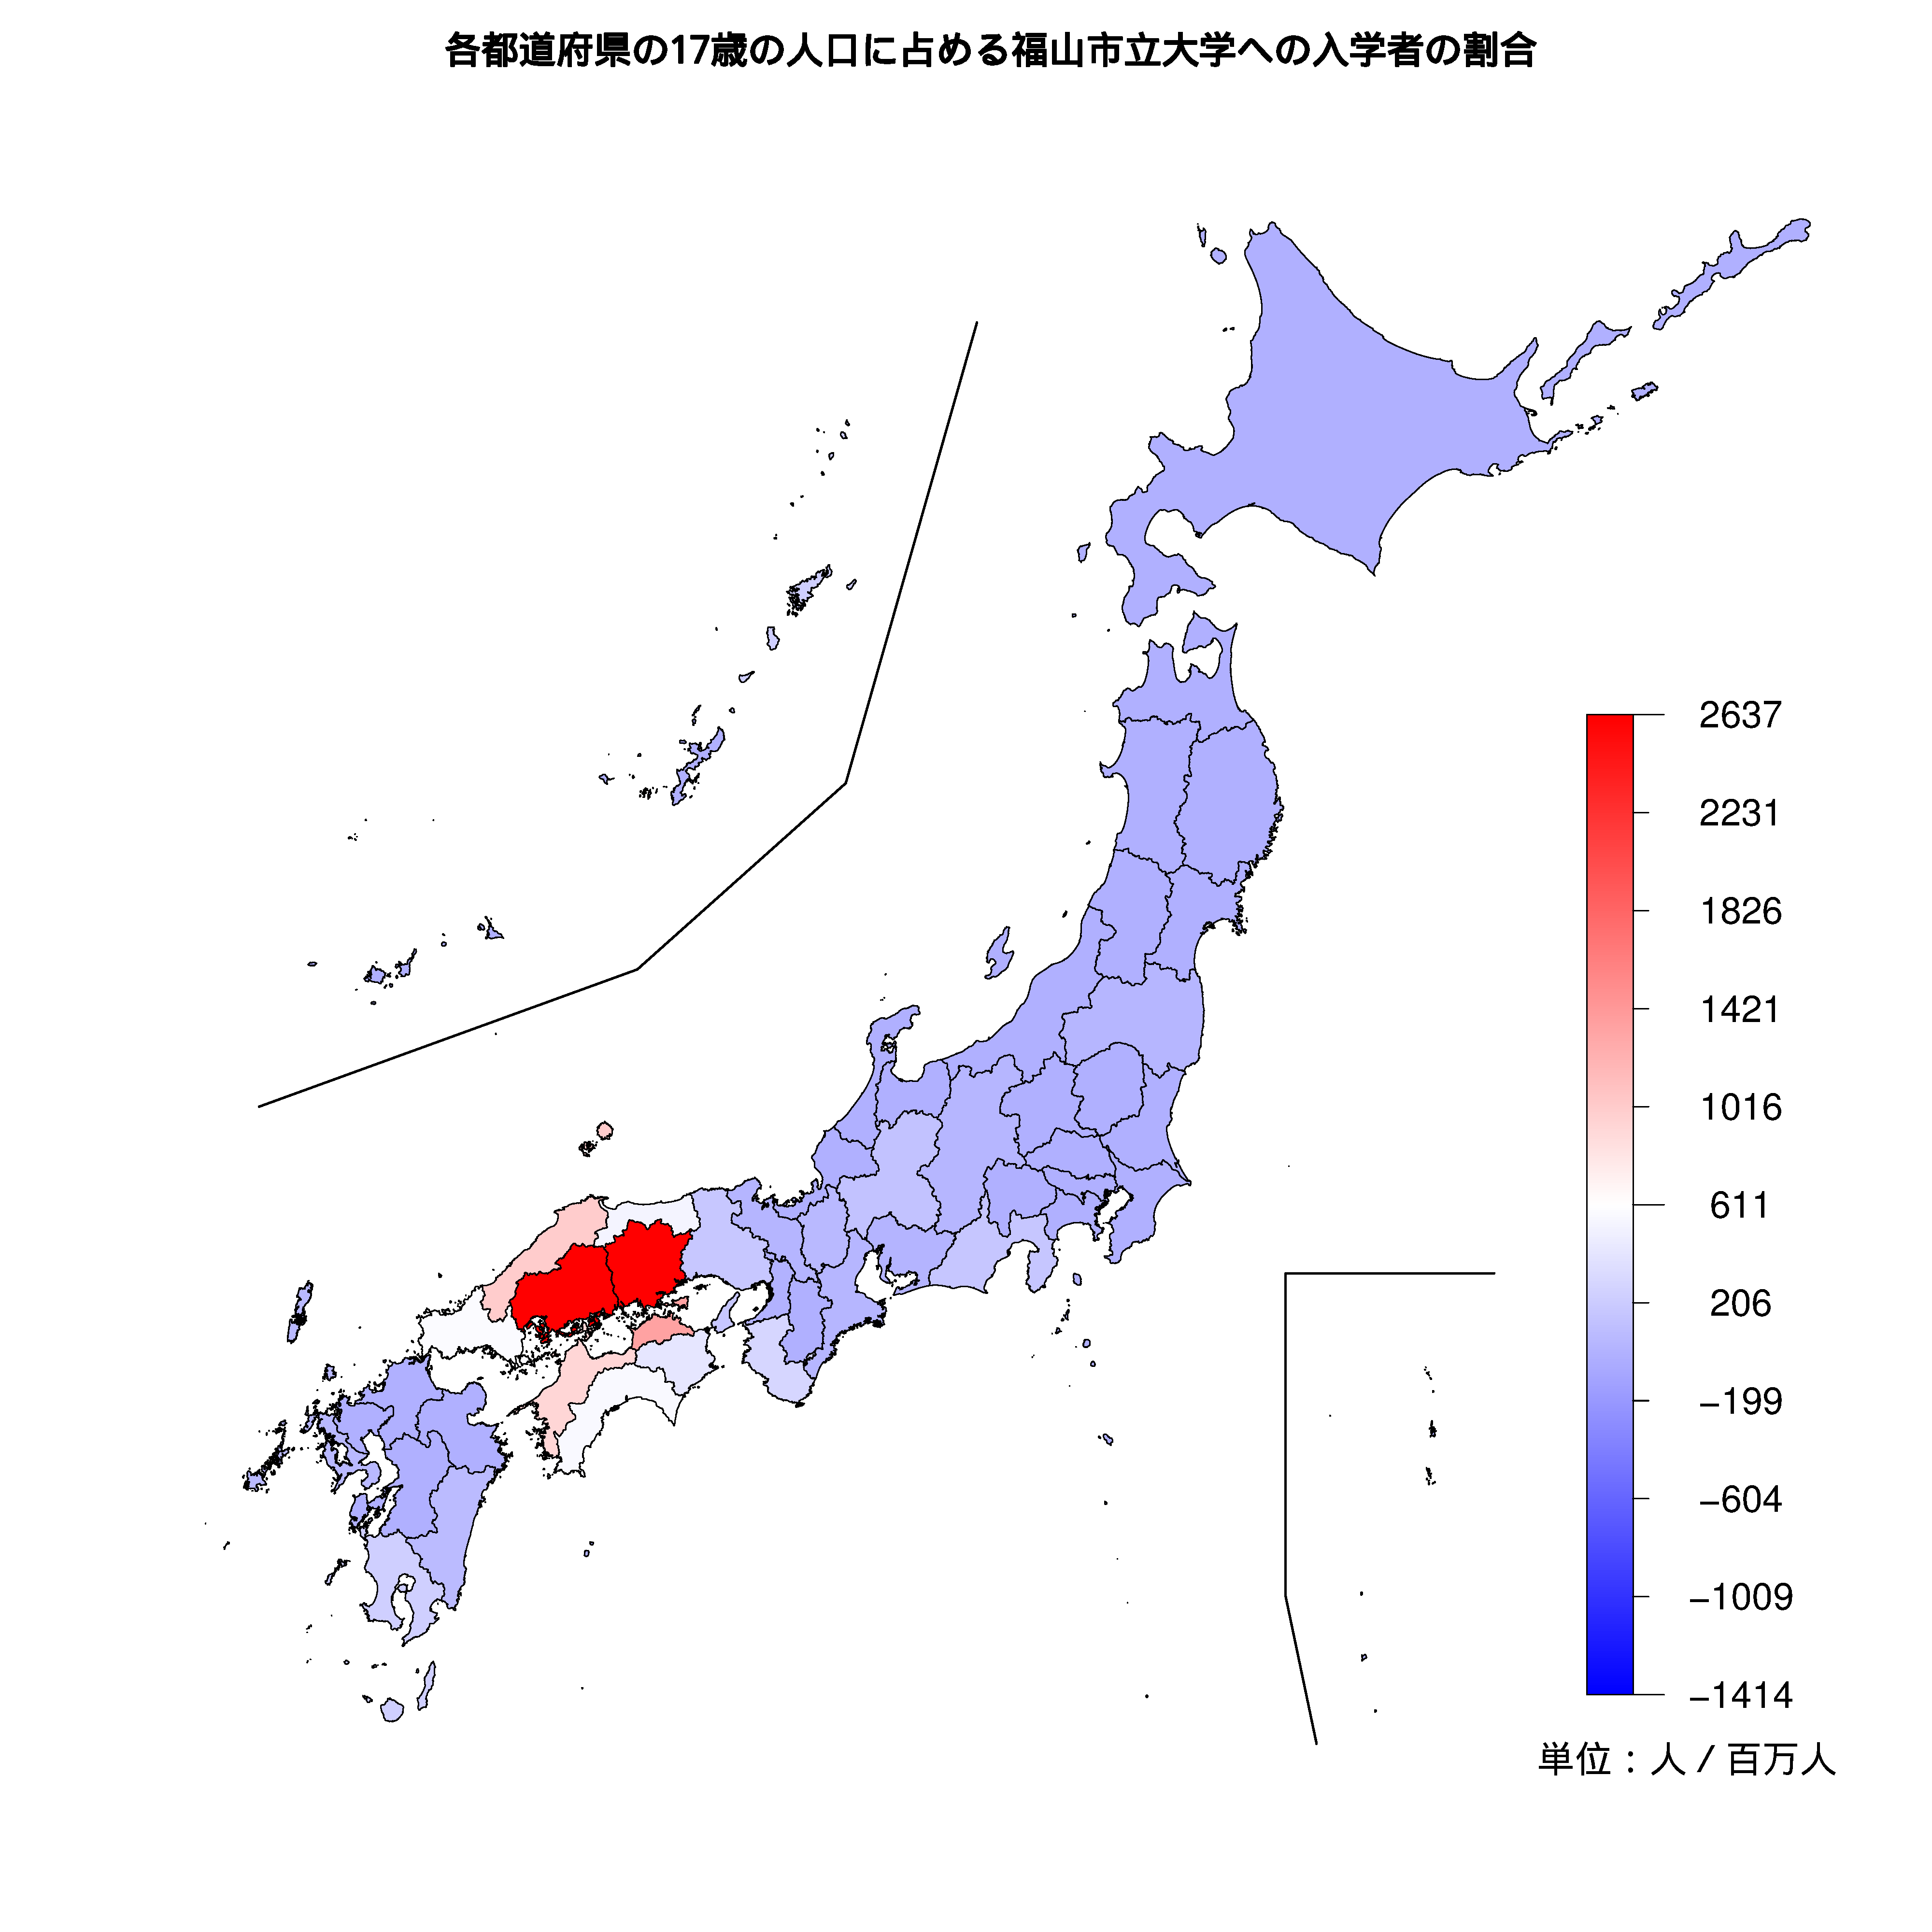 福山市立大学への入学者が多い都道府県の色分け地図